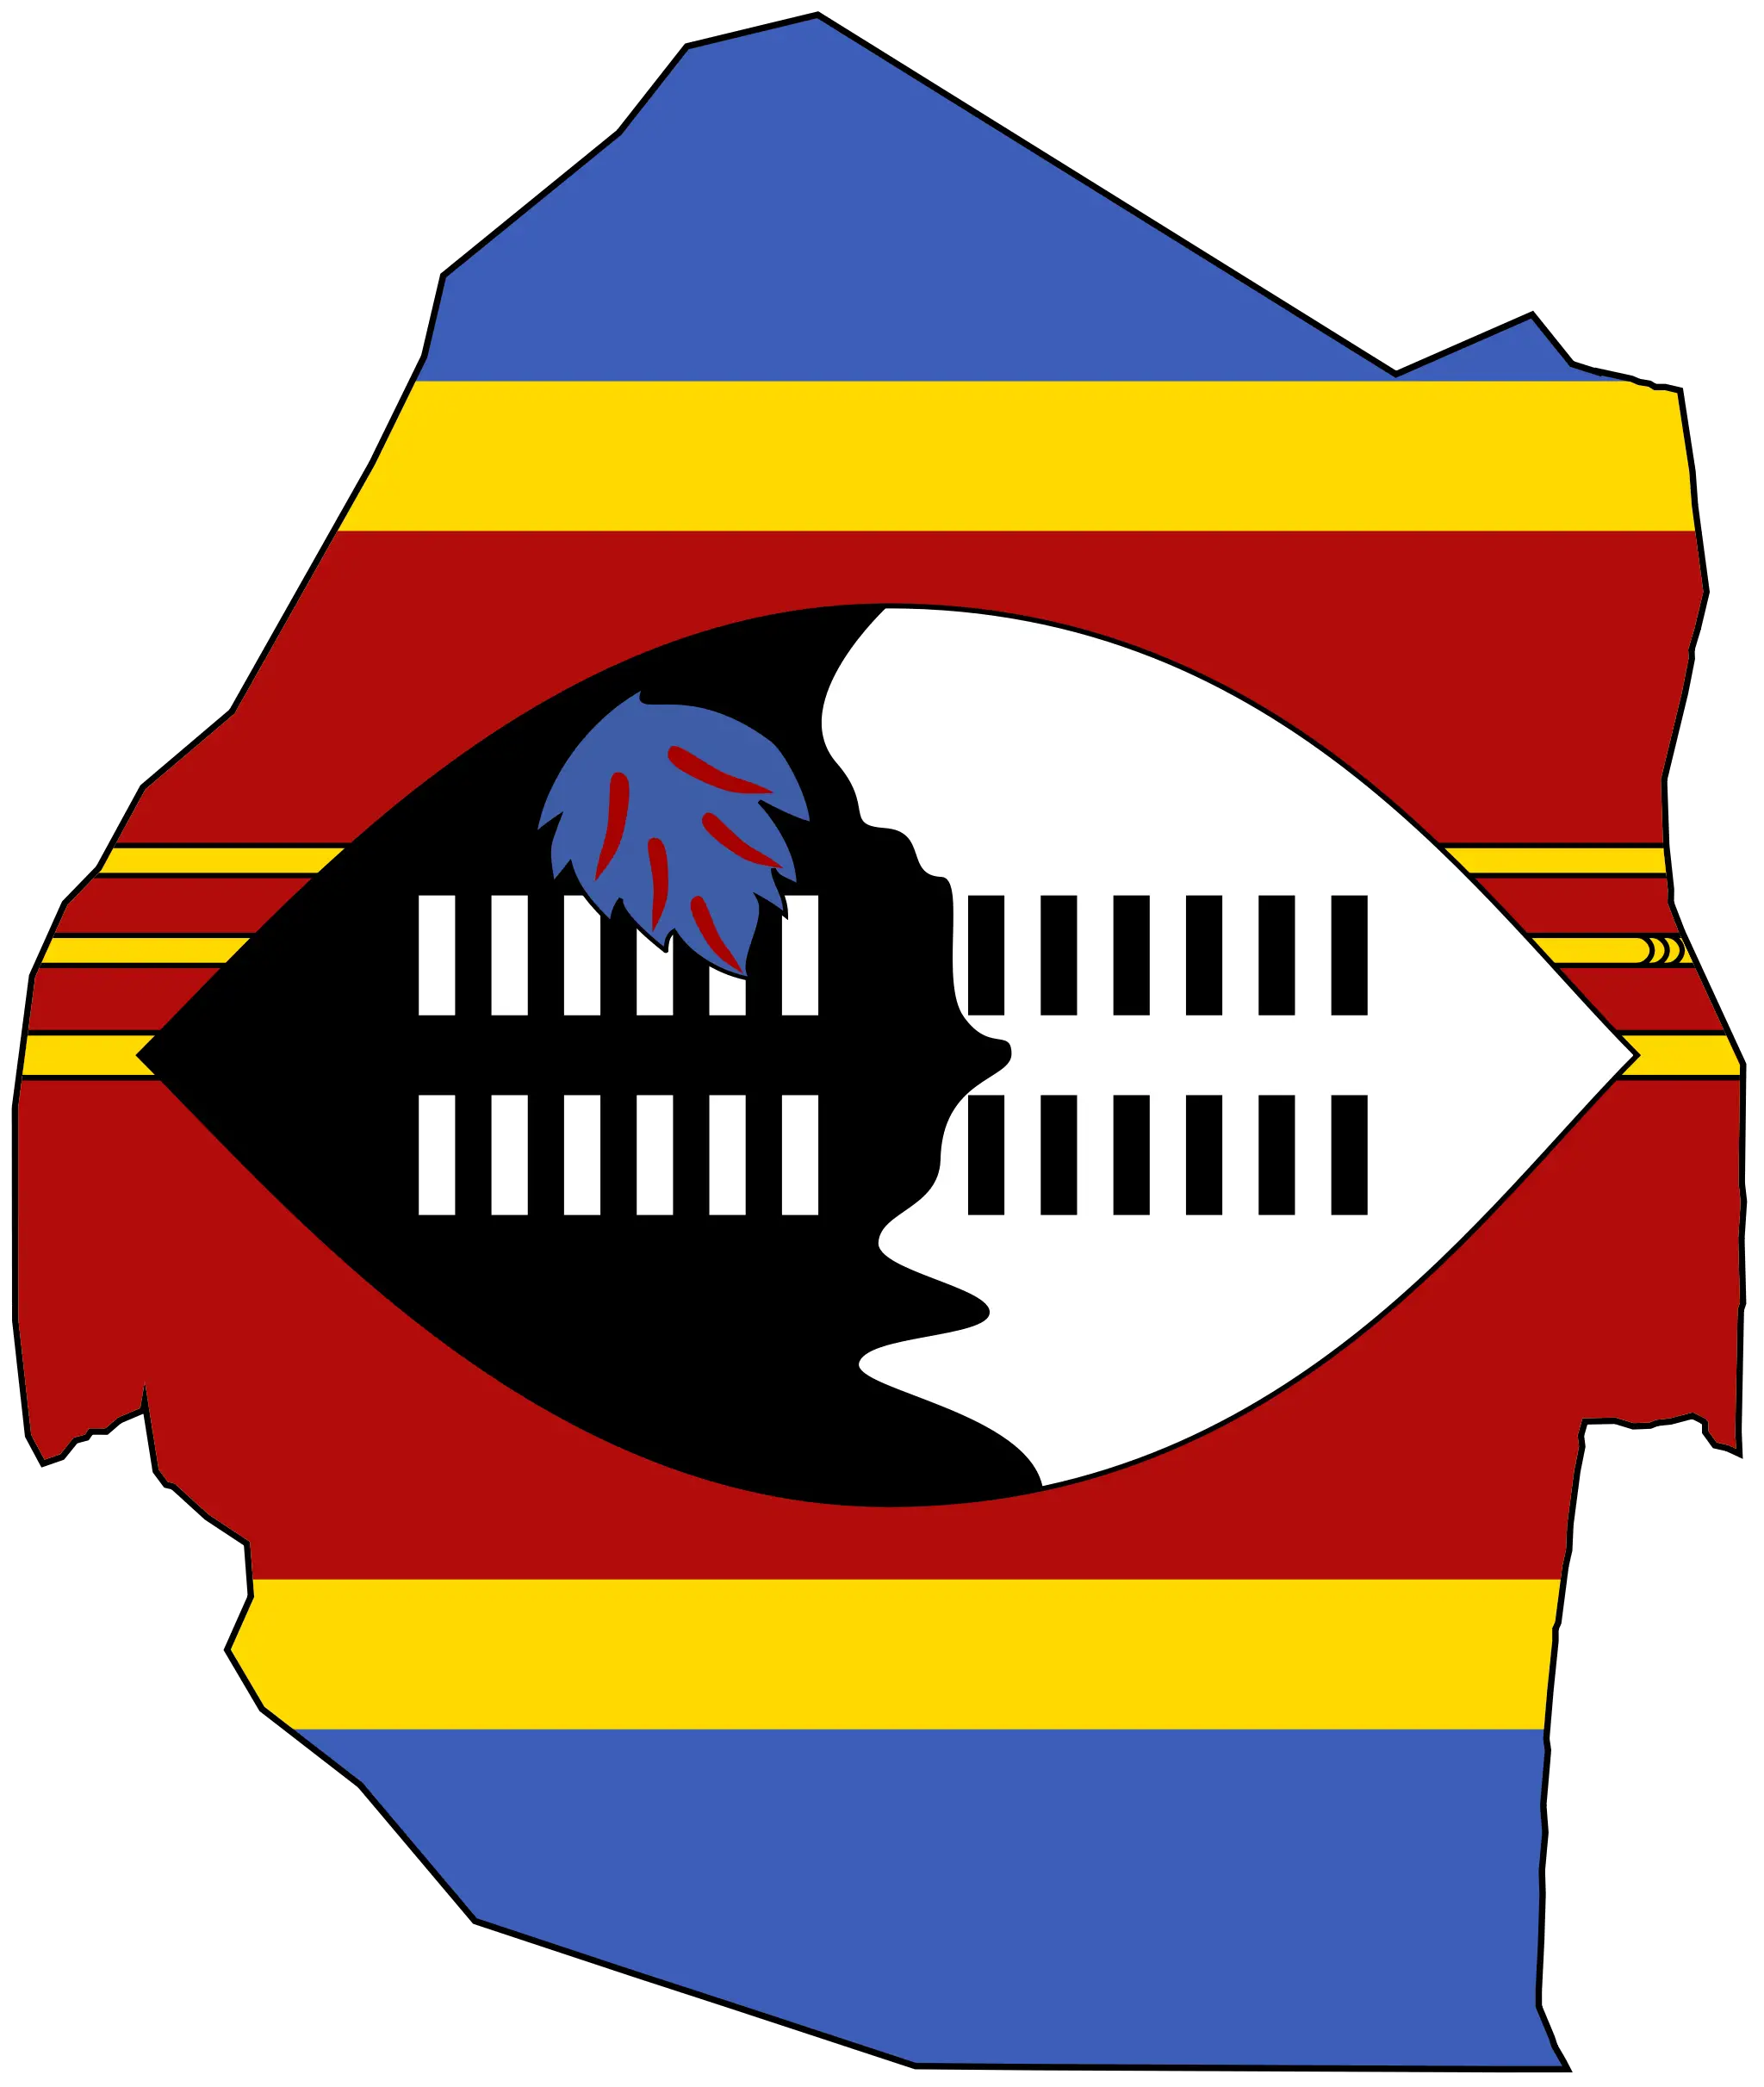 خرائط واعلام سوازيلاند  2012 -Maps and flags Swaziland 2012